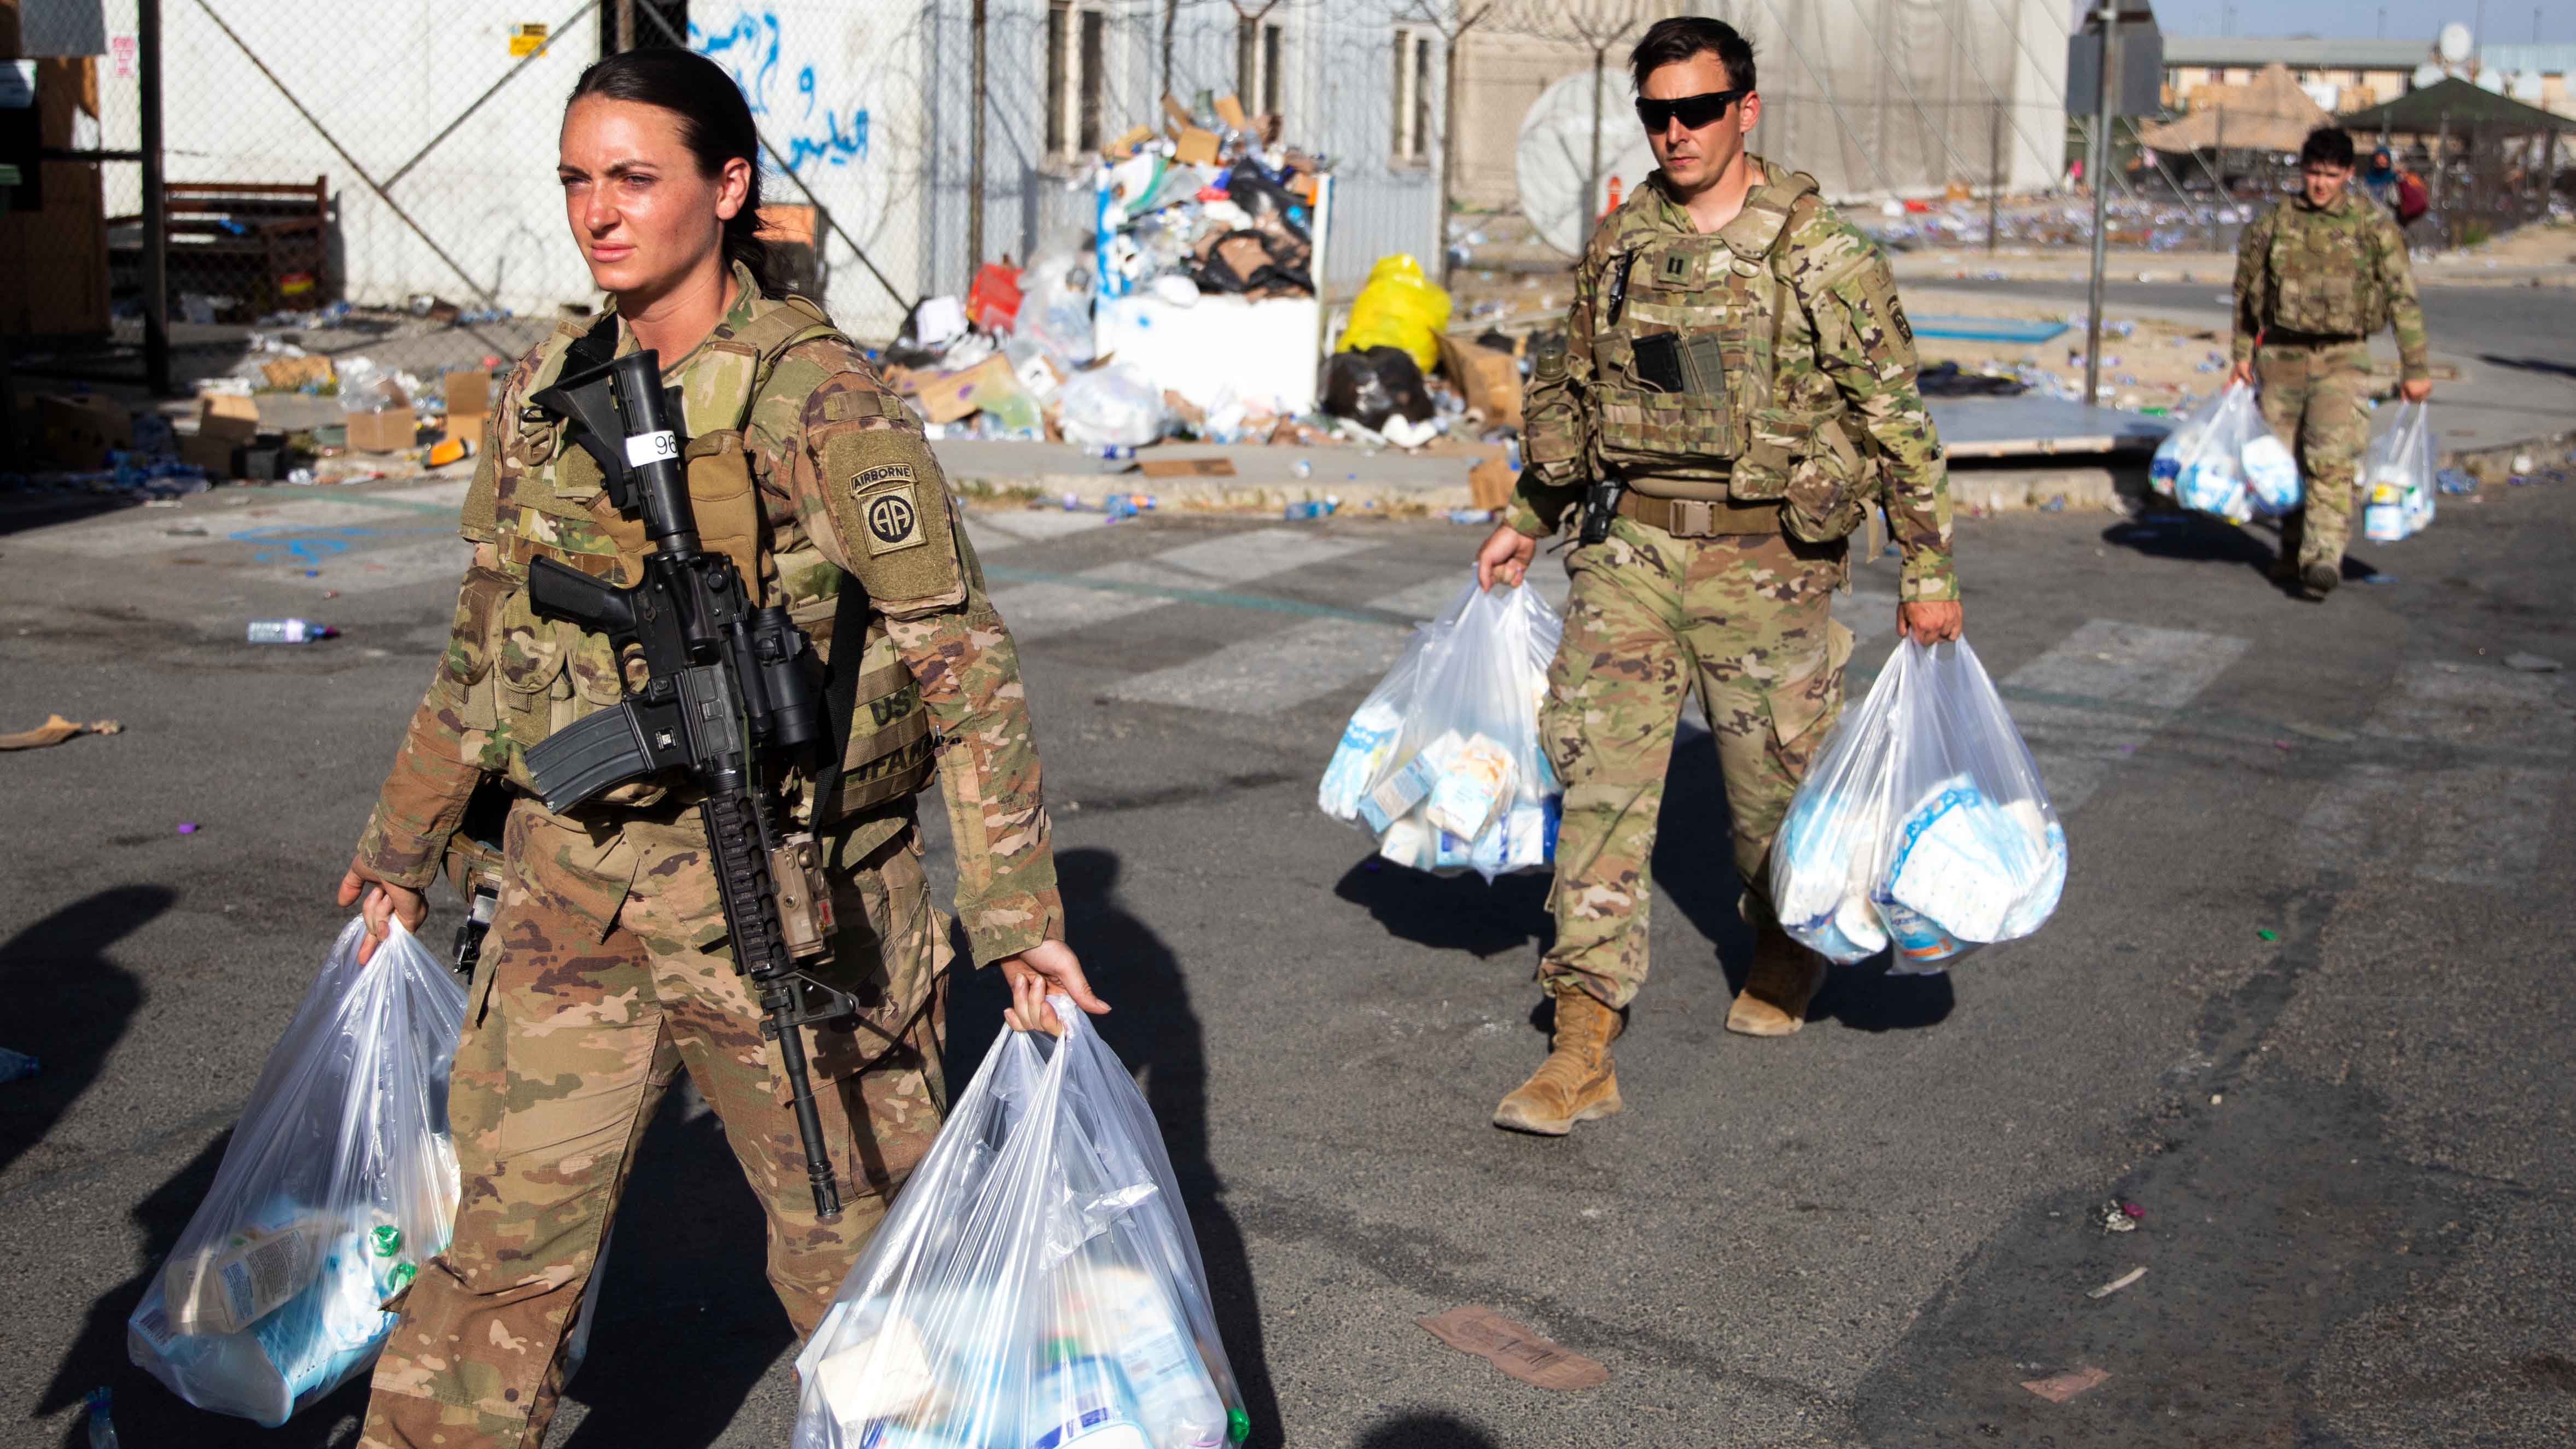 82nd Airborne soldiers evacuating Afghanistan